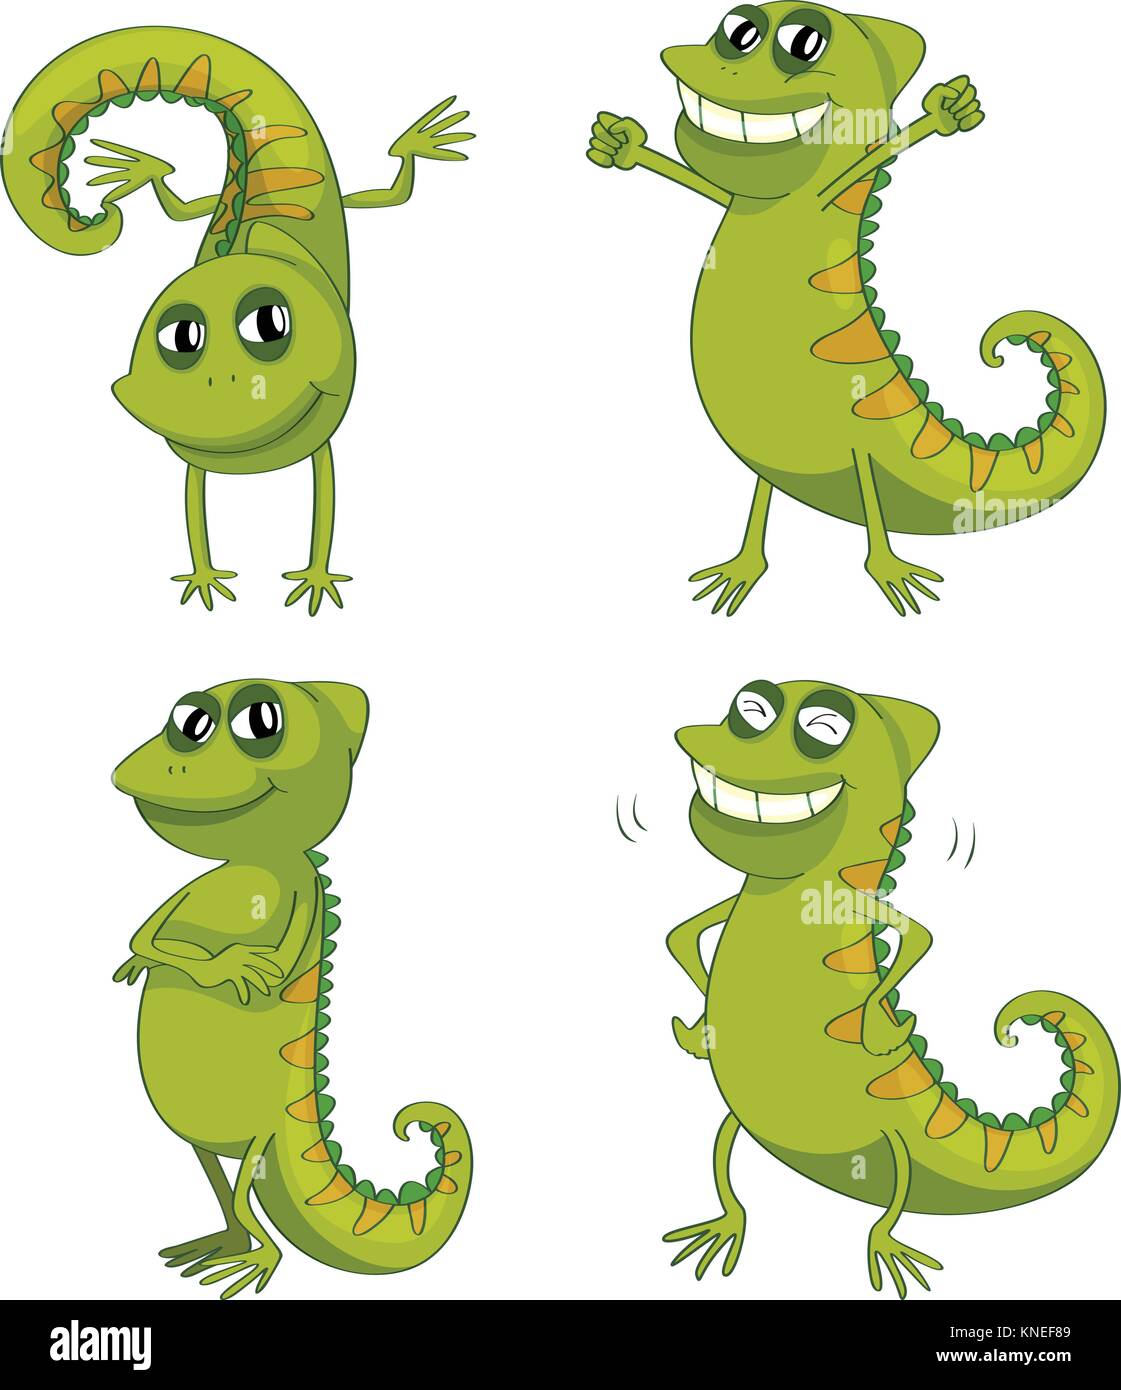 illustration of chameleons on a white background Stock Vector